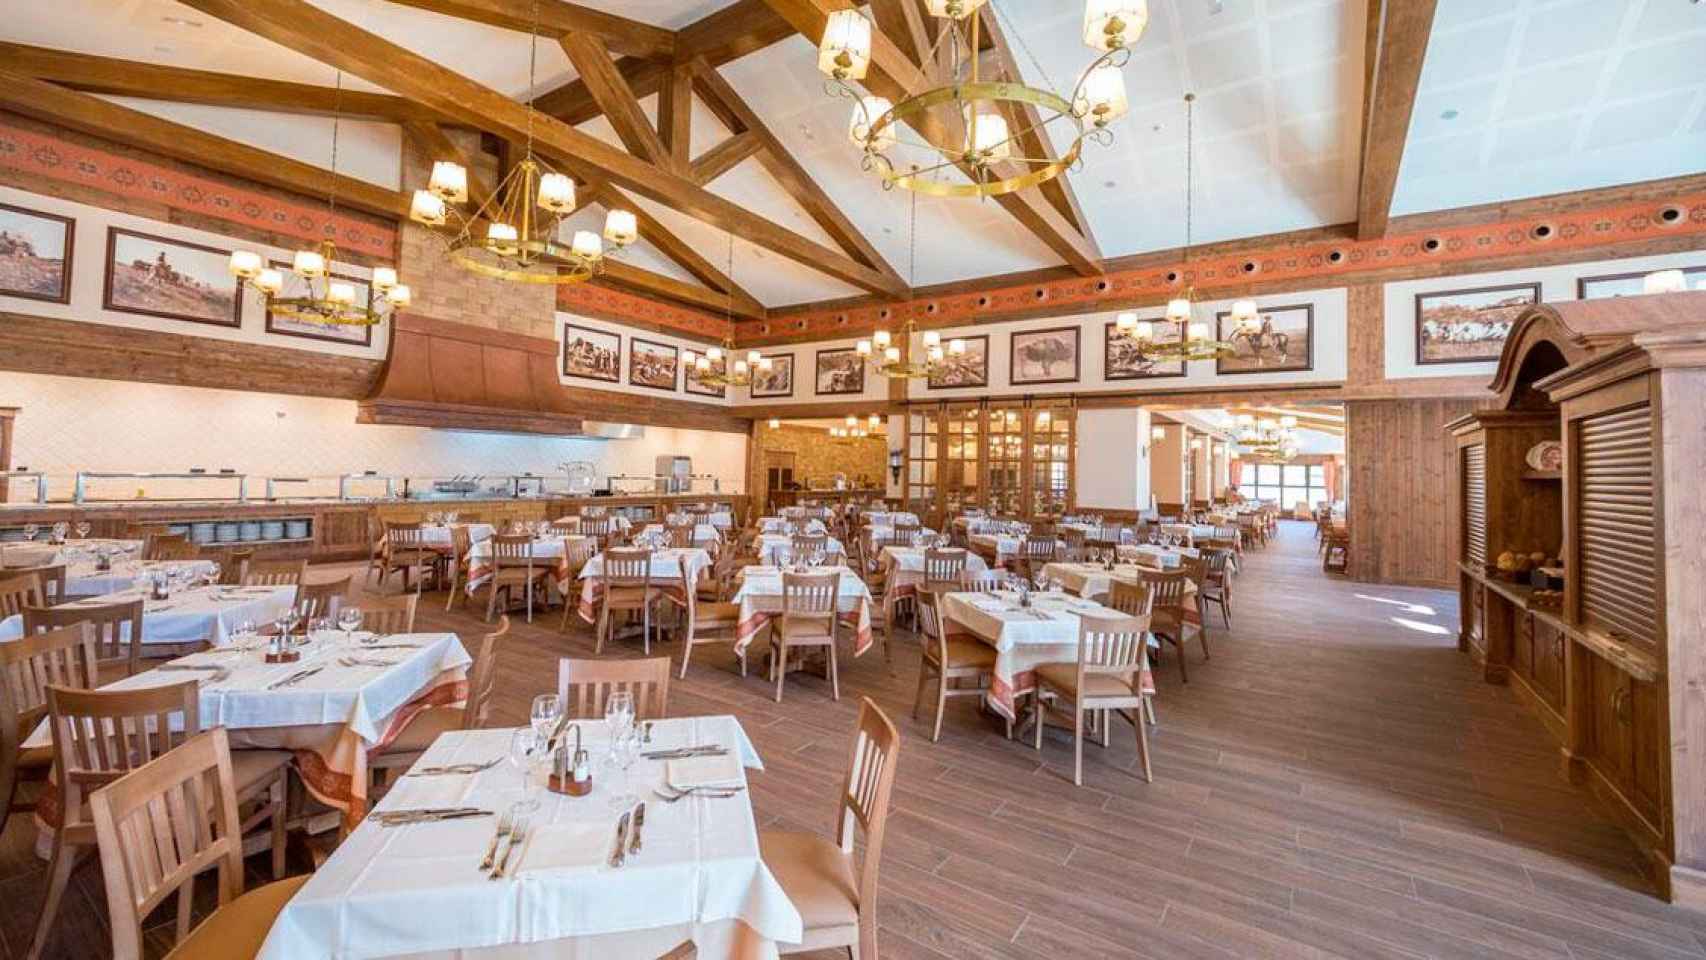 El restaurante del hotel Colorado Creek, uno de los hoteles más icónicos de PortAventura World / CG